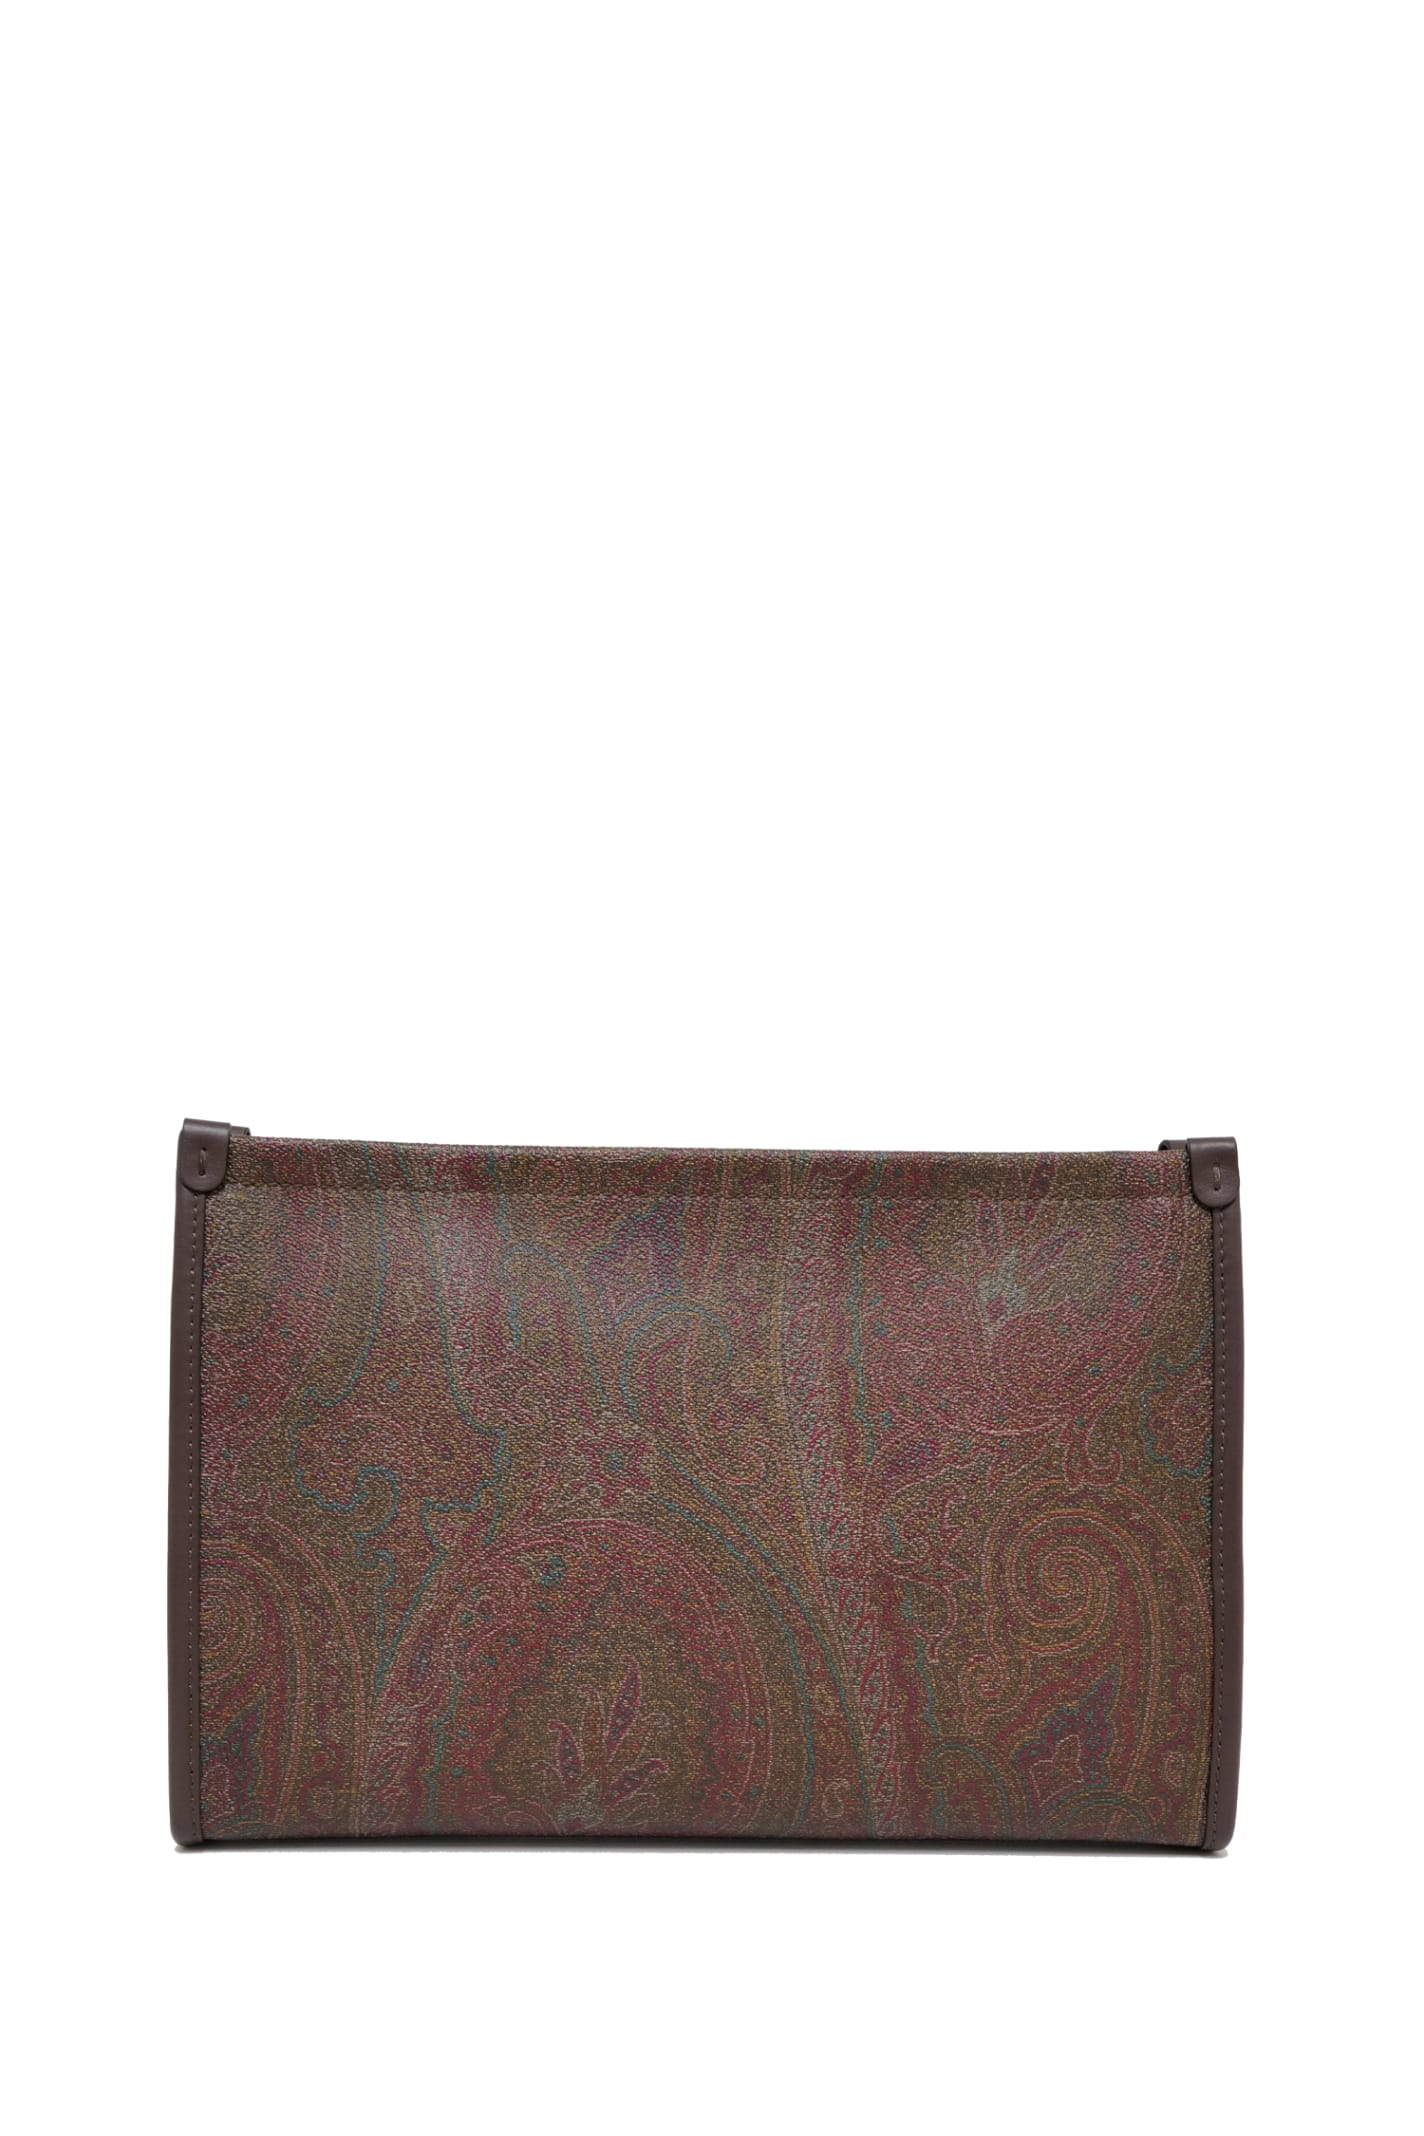 Shop Etro Handbag In Brown